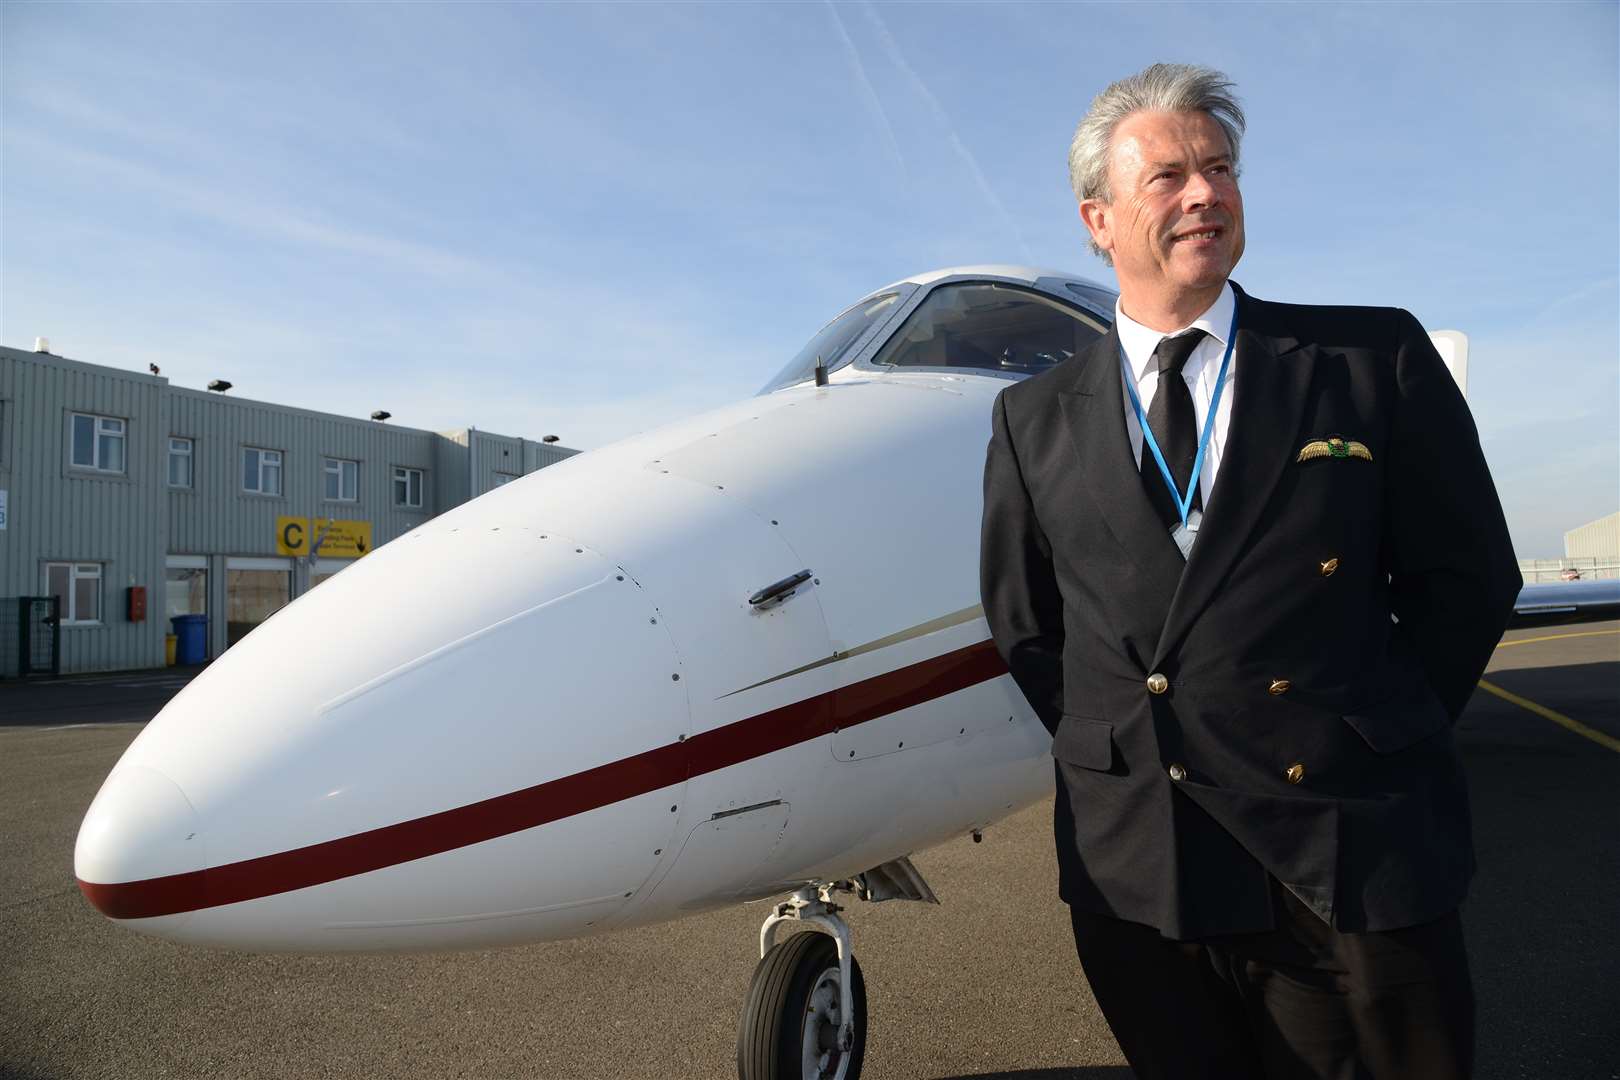 ABA chief executive Captain Jonathan Gordon alongside his company's jet